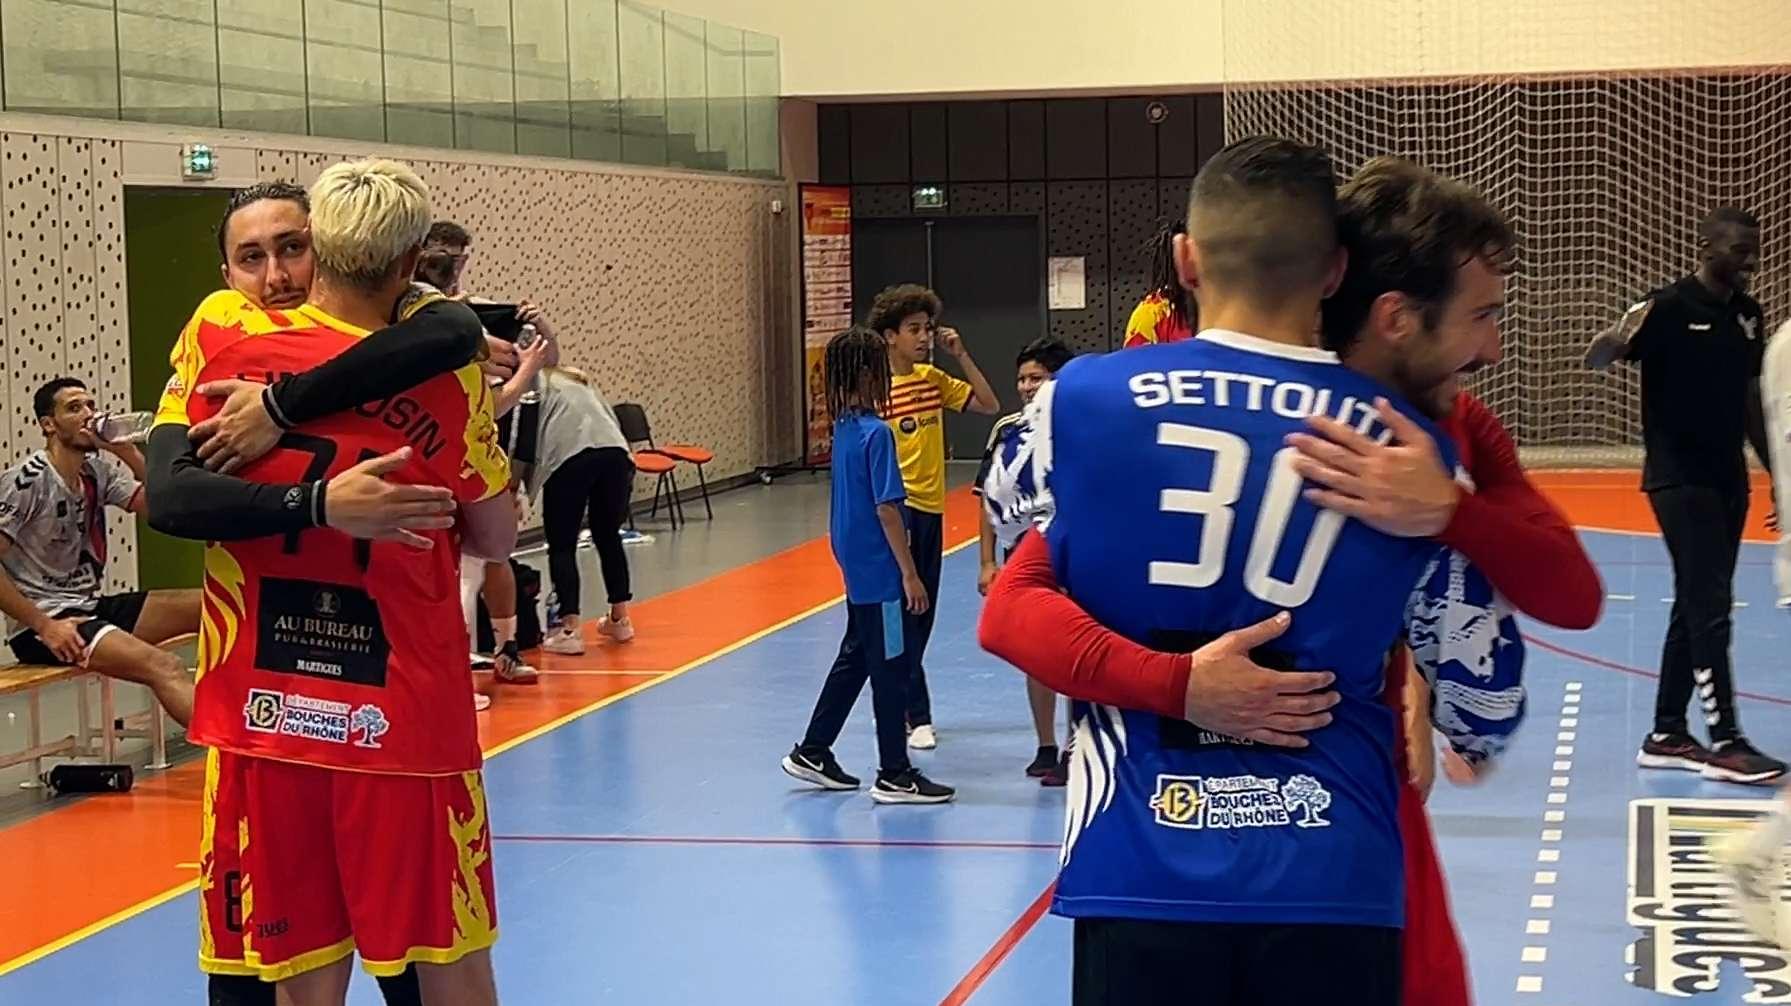 Martigues Handball : le maintien en poche, les Lions veulent encore grandir la saison prochaine